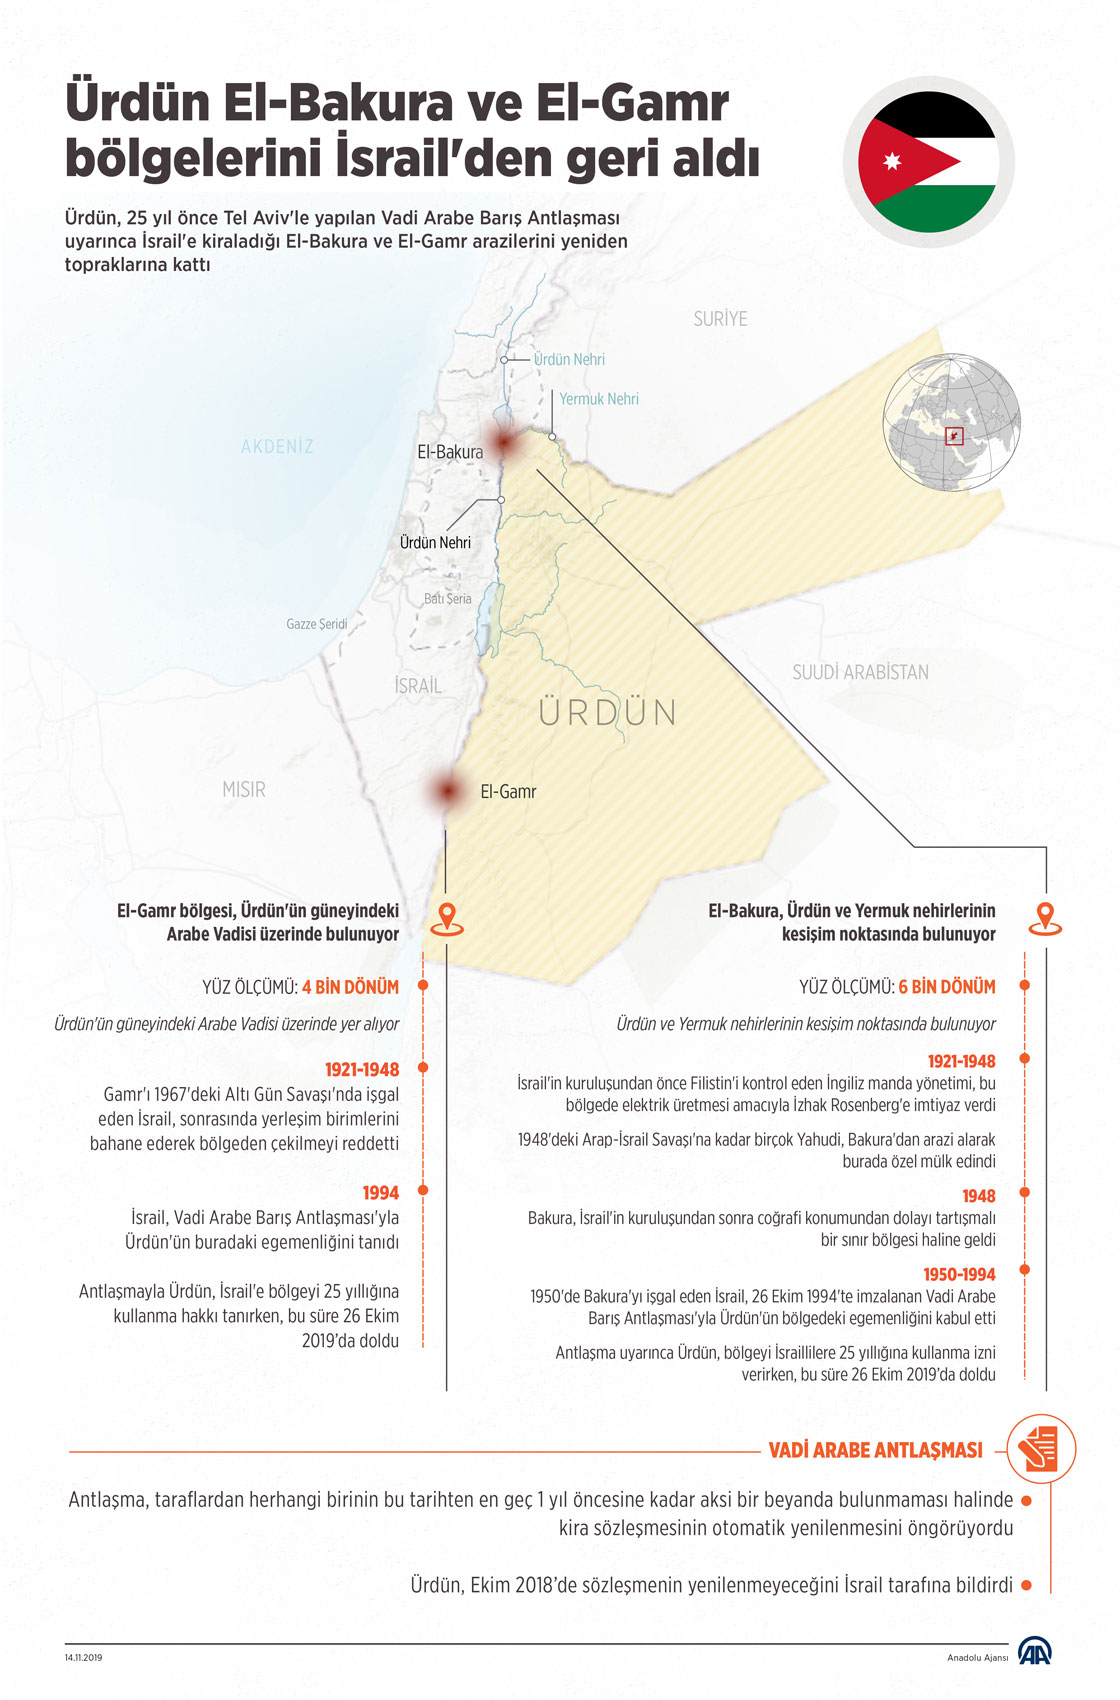 Ürdün El-Bakura ve El-Gamr bölgelerini İsrail'den geri aldı